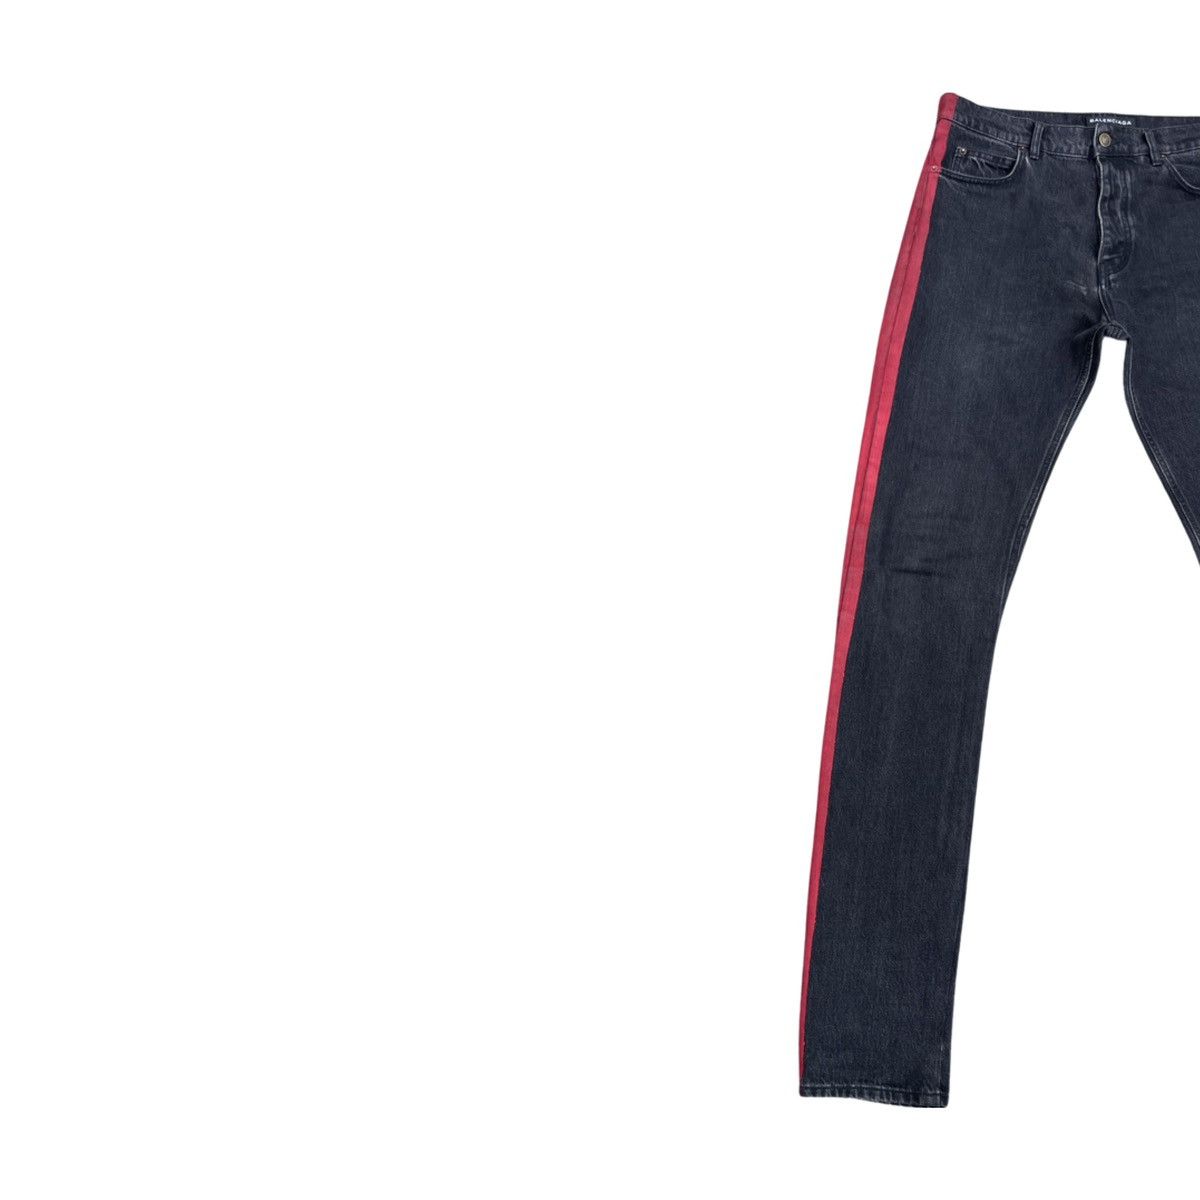 Balenciaga SS17 Red Stripe Jeans Size US 32 / EU 48 - 6 Thumbnail